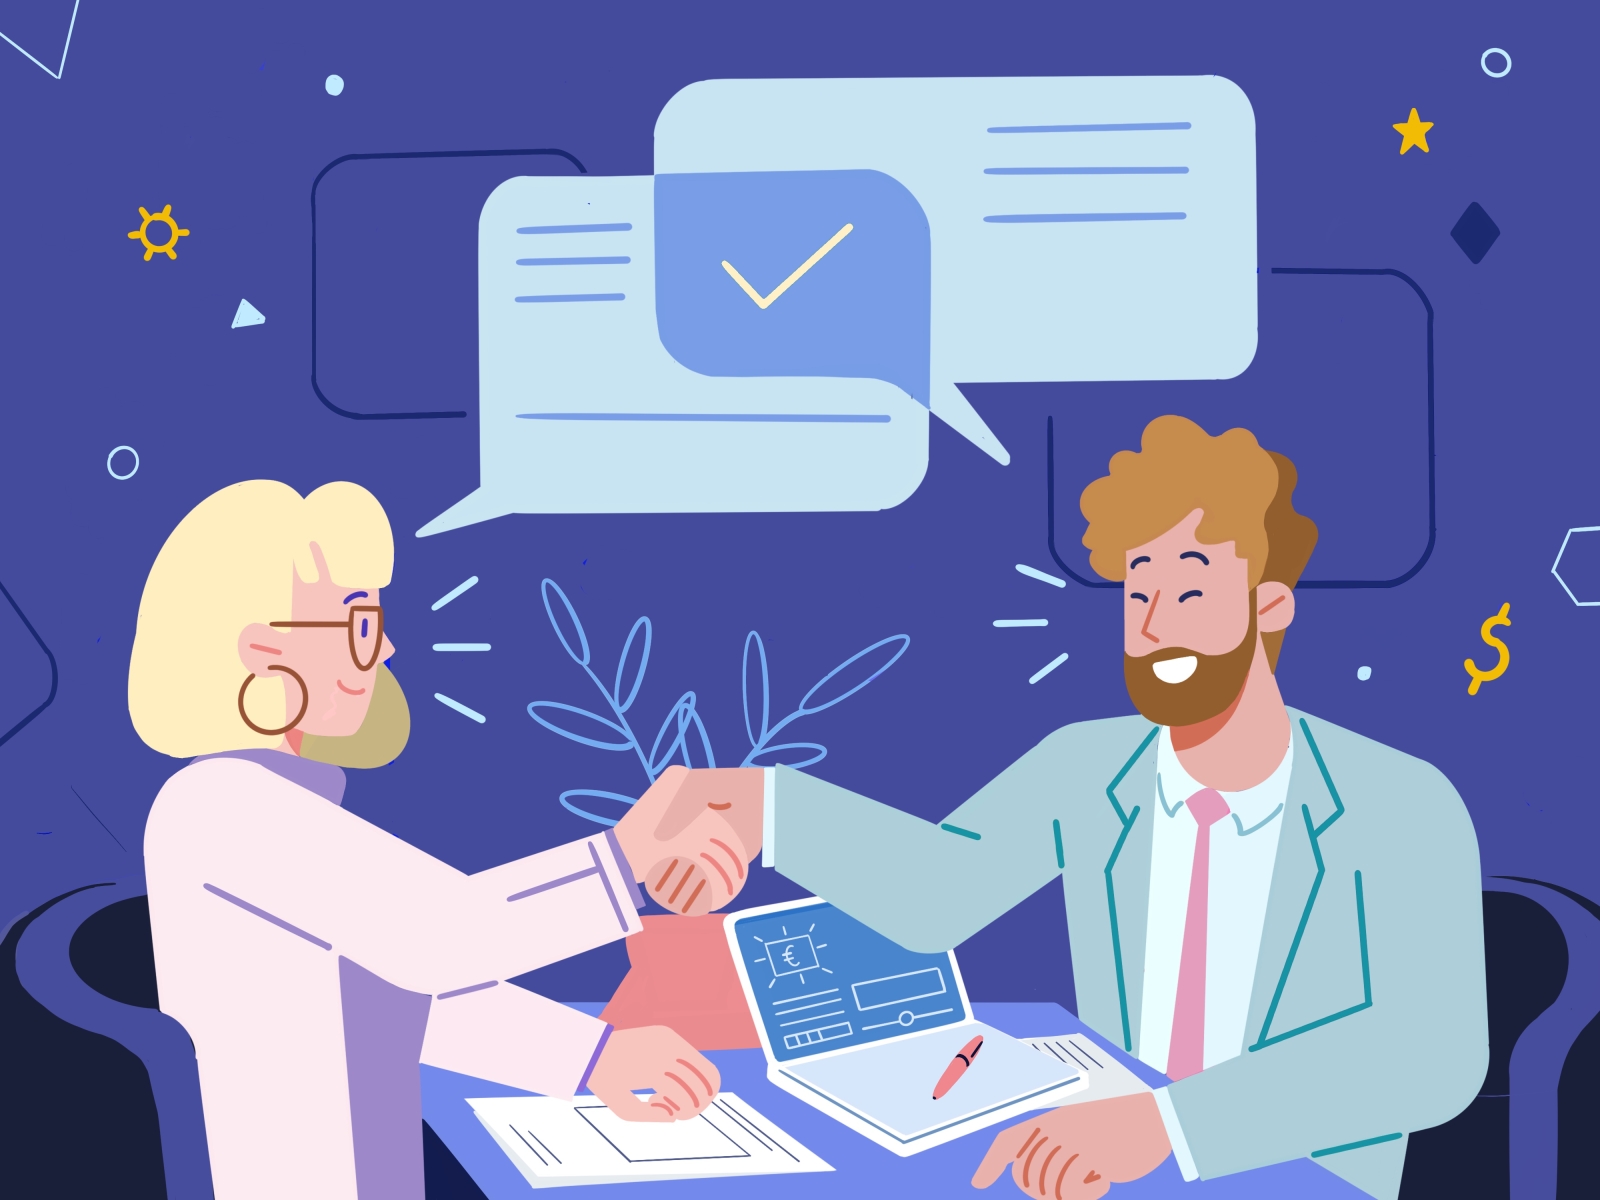 Client and freelancer handshake illustration